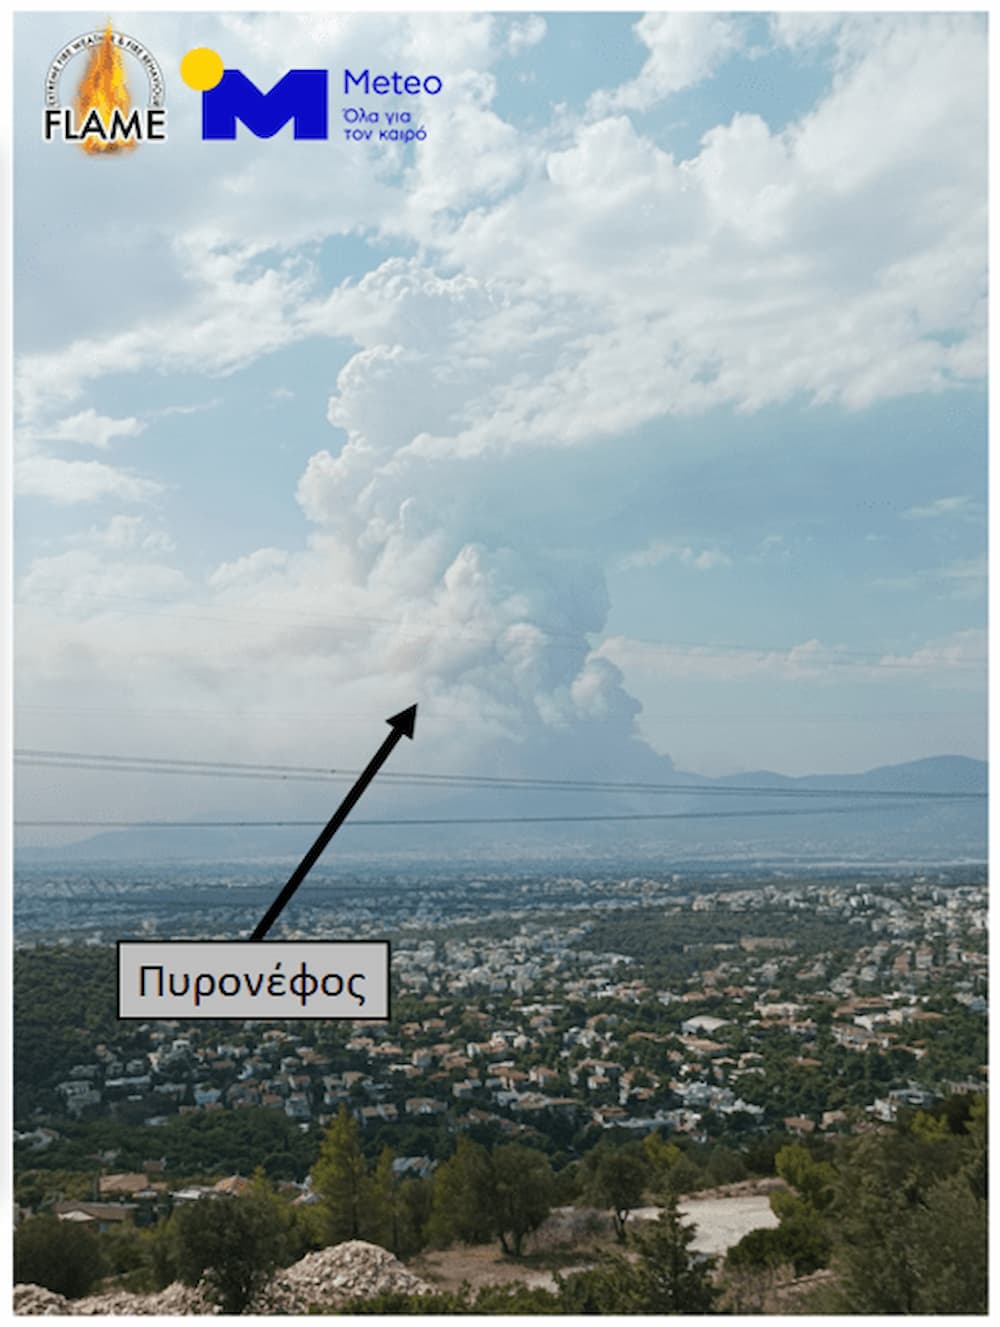 Meteo: Τι είναι το «πυρονέφος» που εμφανίστηκε από τη φωτιά στην Πάρνηθα (εικόνες)